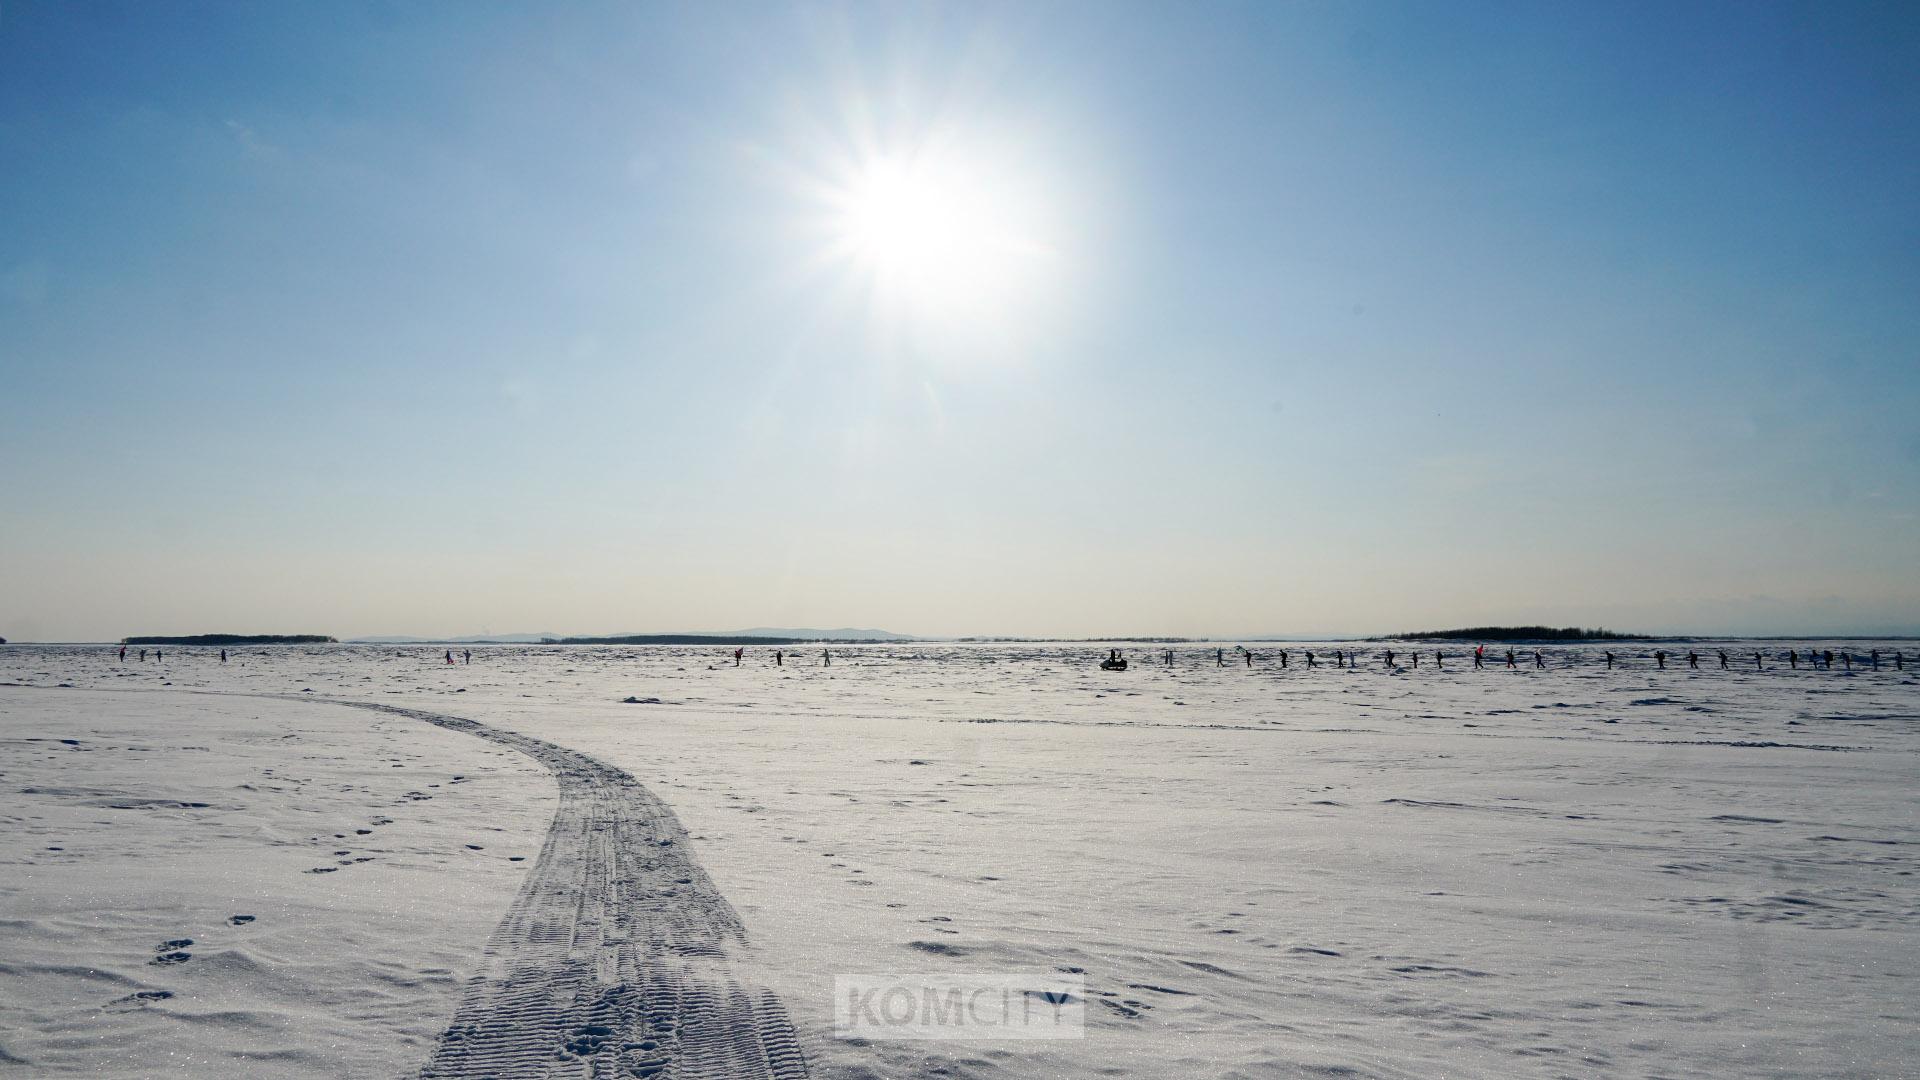 Ветер в лицо и собака-талисман — 150 километров прошли участники лыжного перехода «Лёд и пламя»